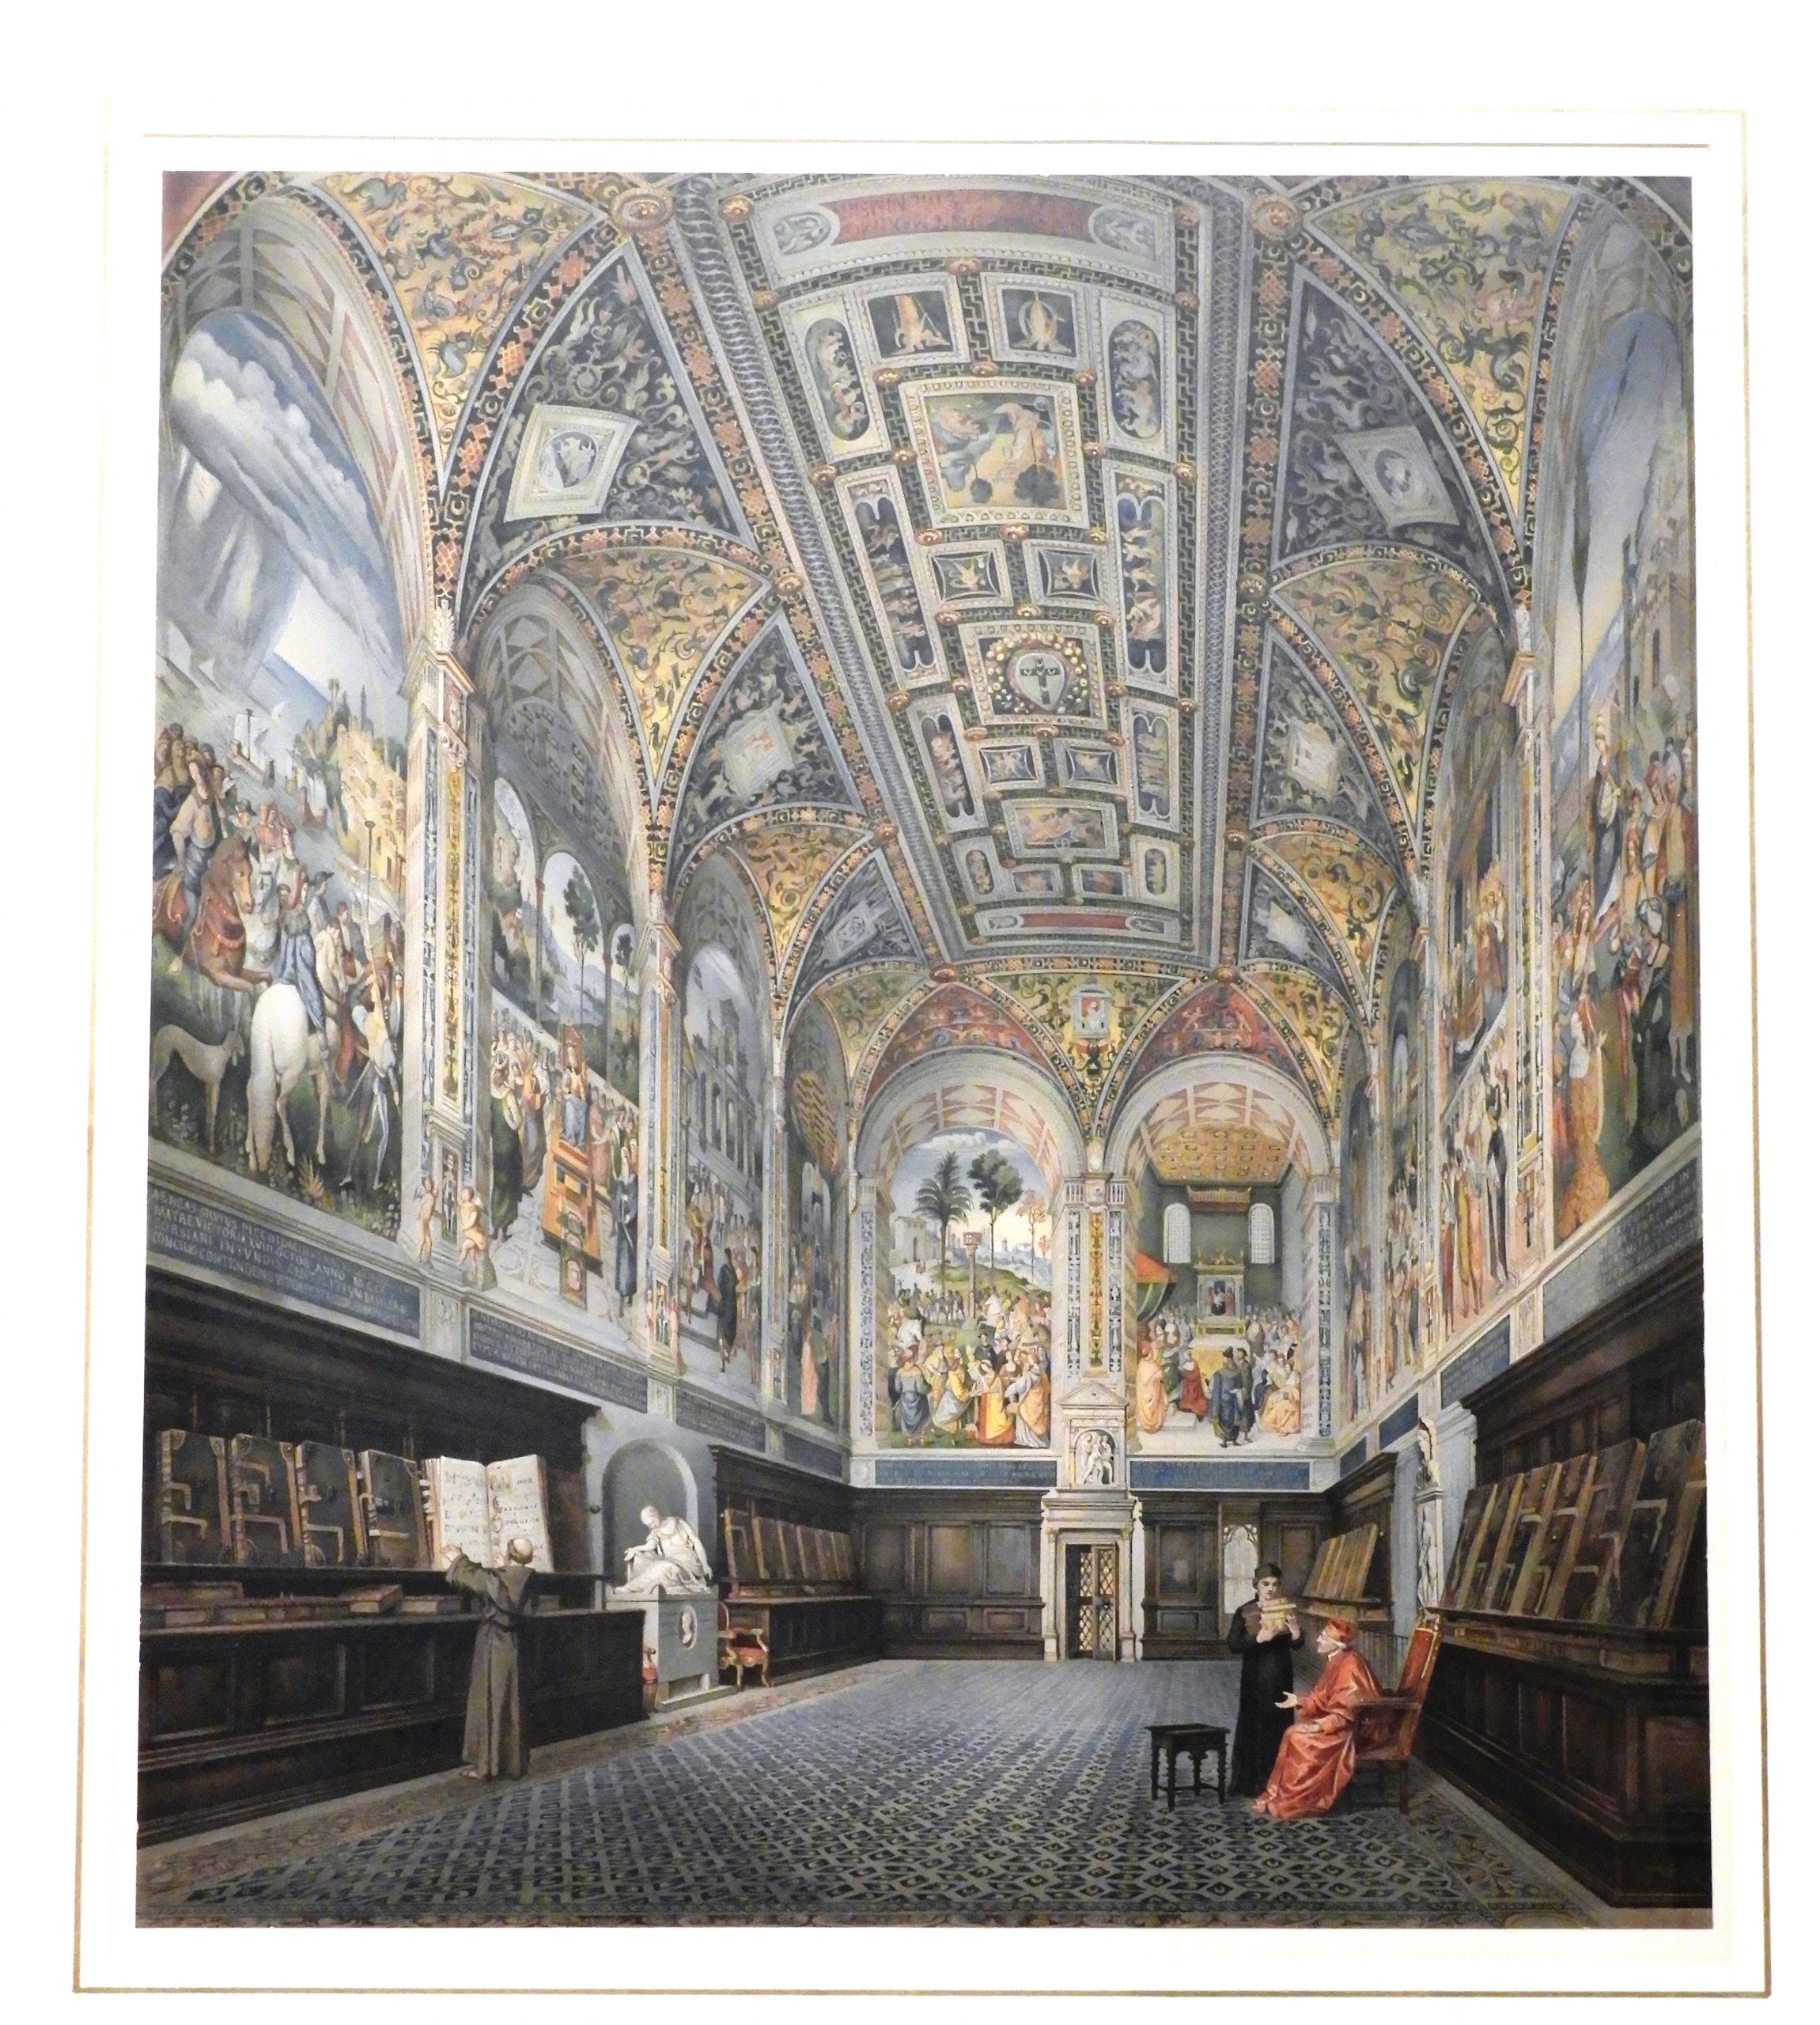 La-Libreria-Piccolomini-nel-Duomo-di-Siena-1880-scaled.jpg